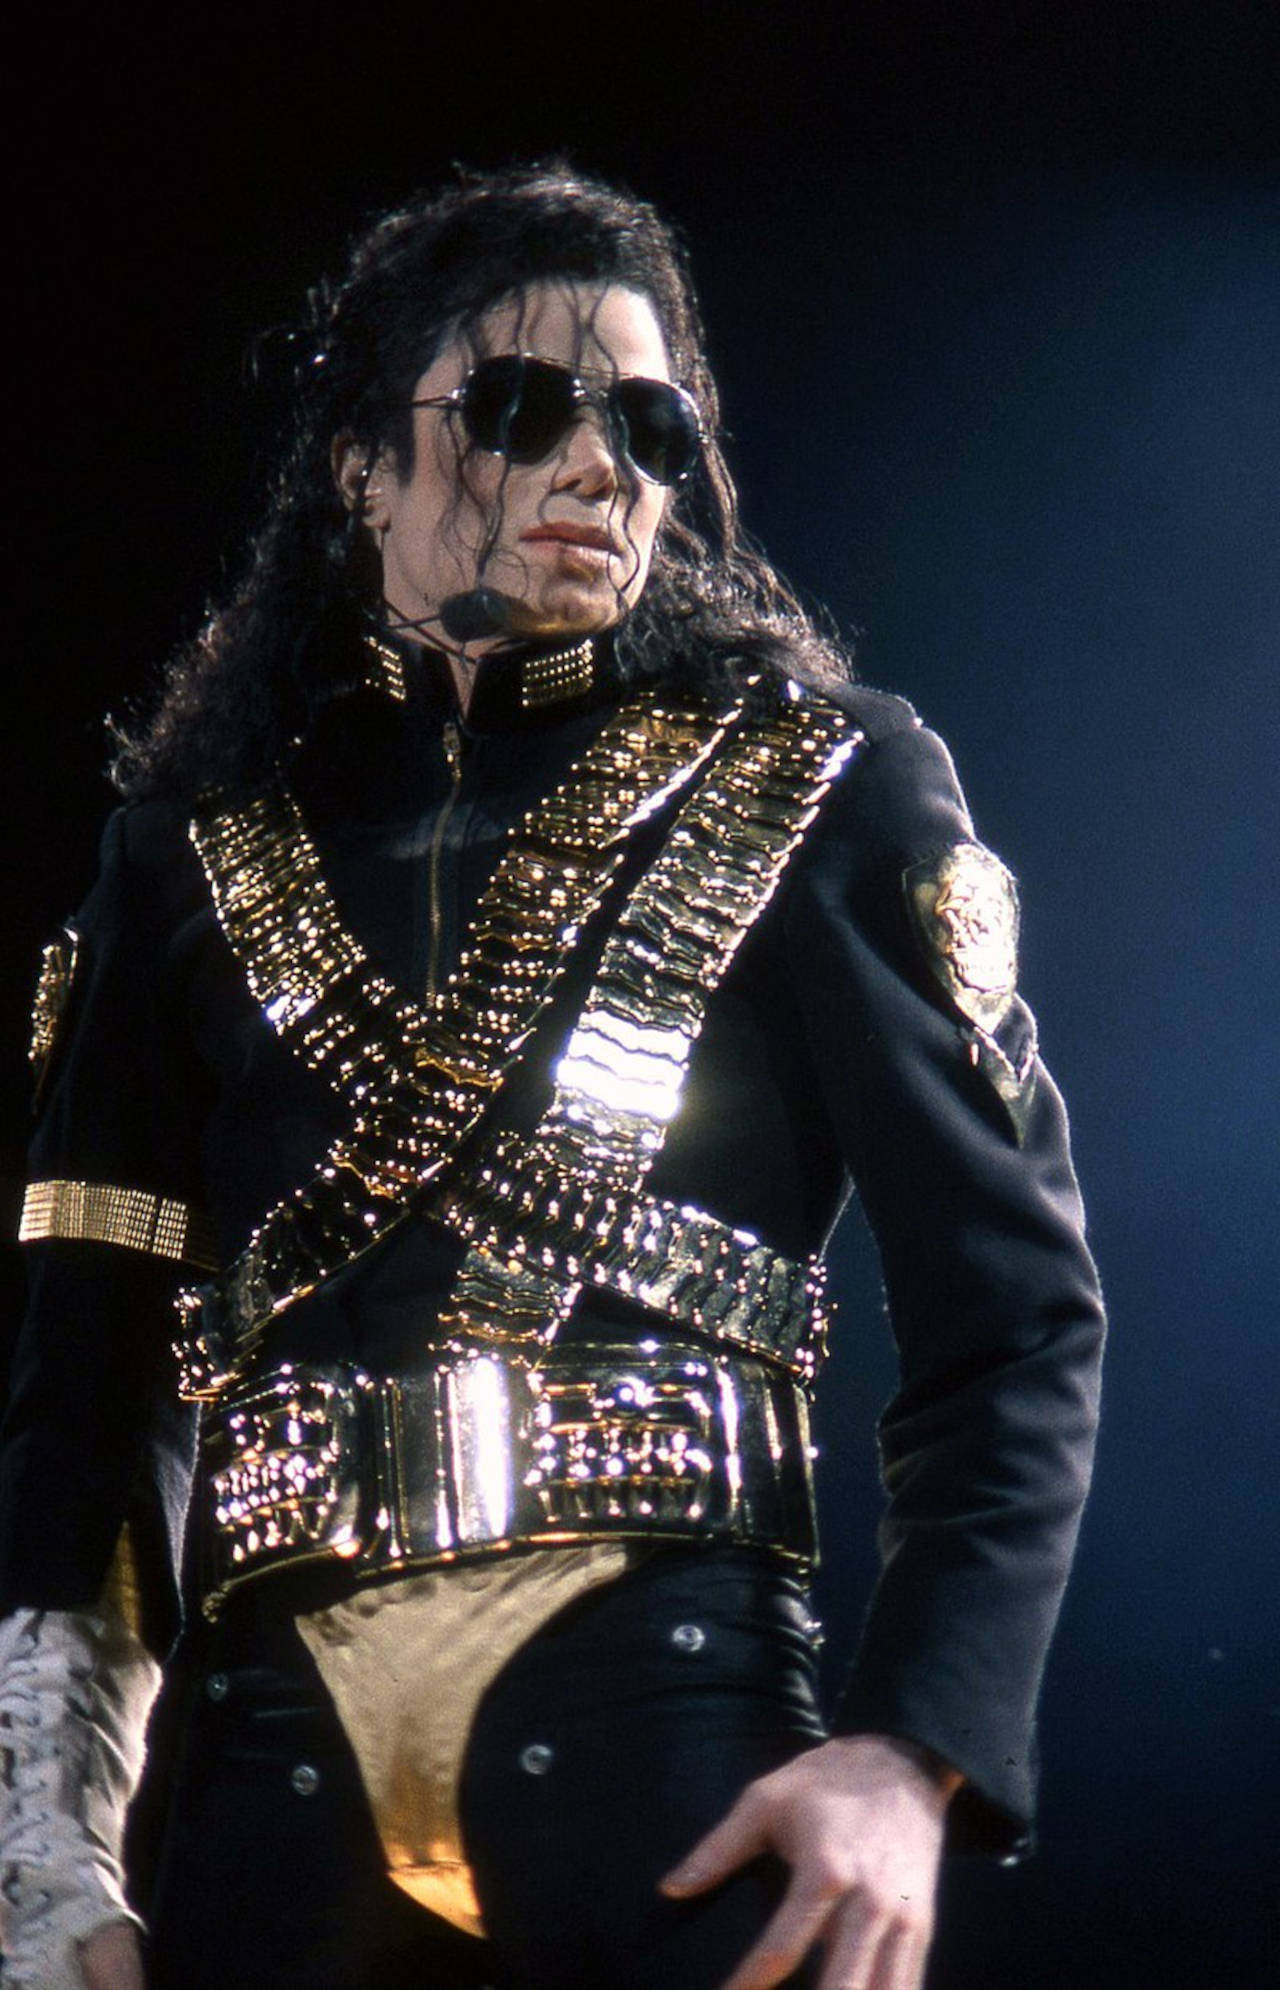 Michael Jackson Dangerous Cover